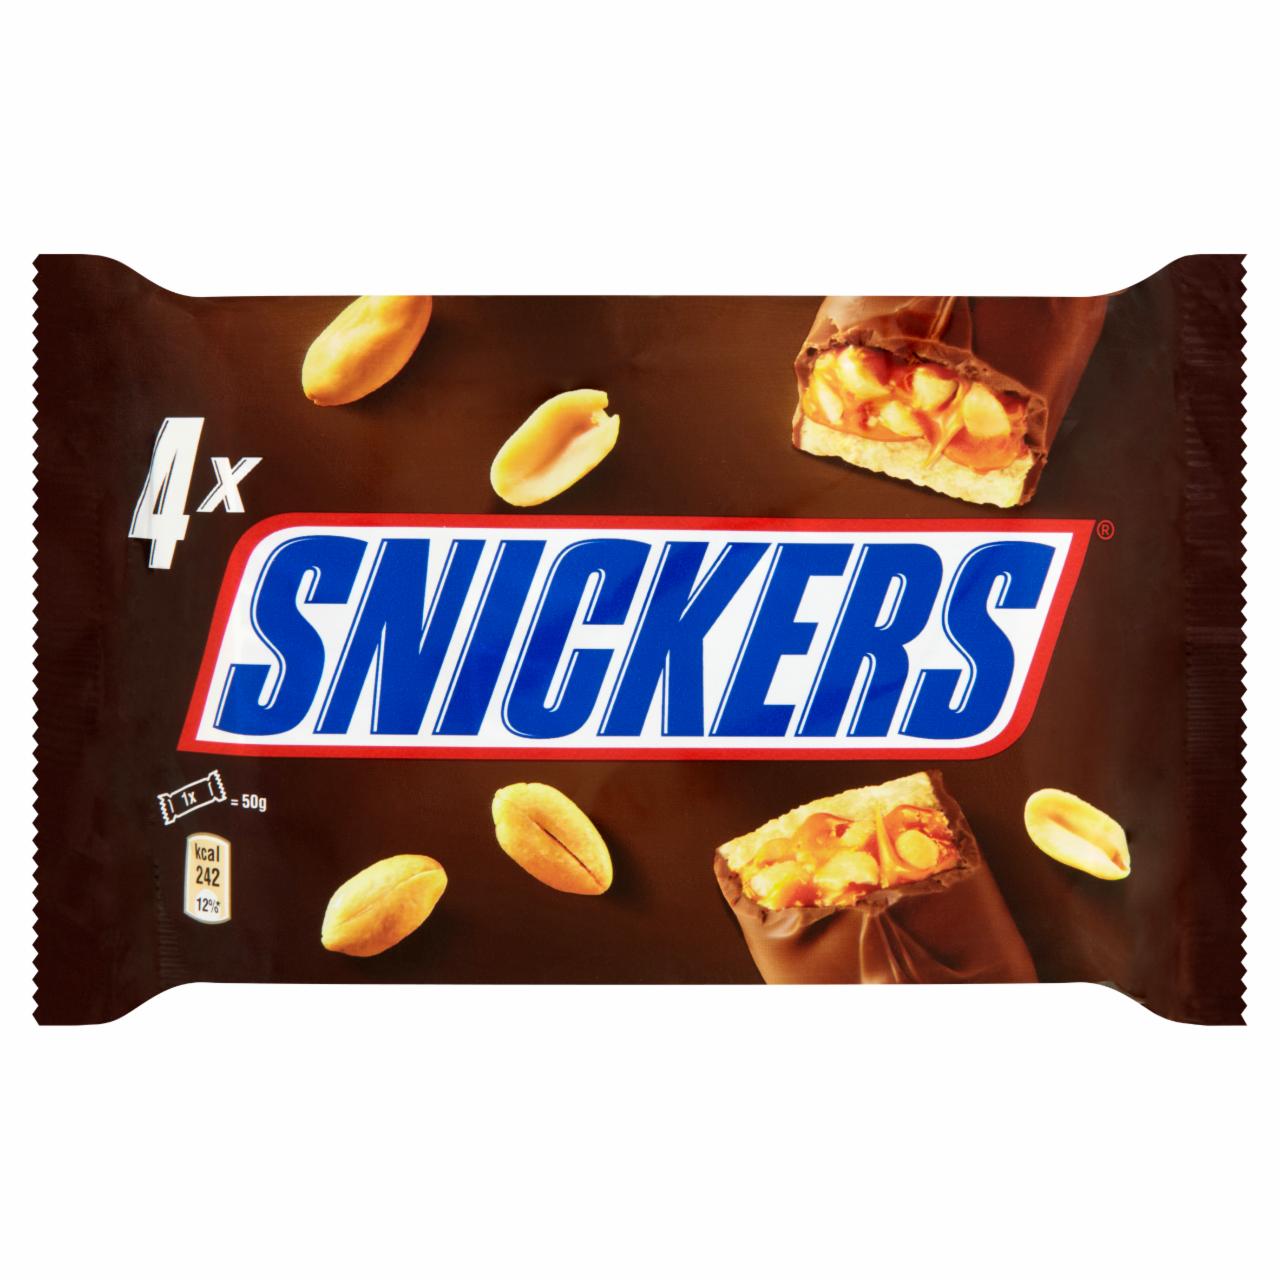 Képek - Snickers multipack 4-es csomag 200 g